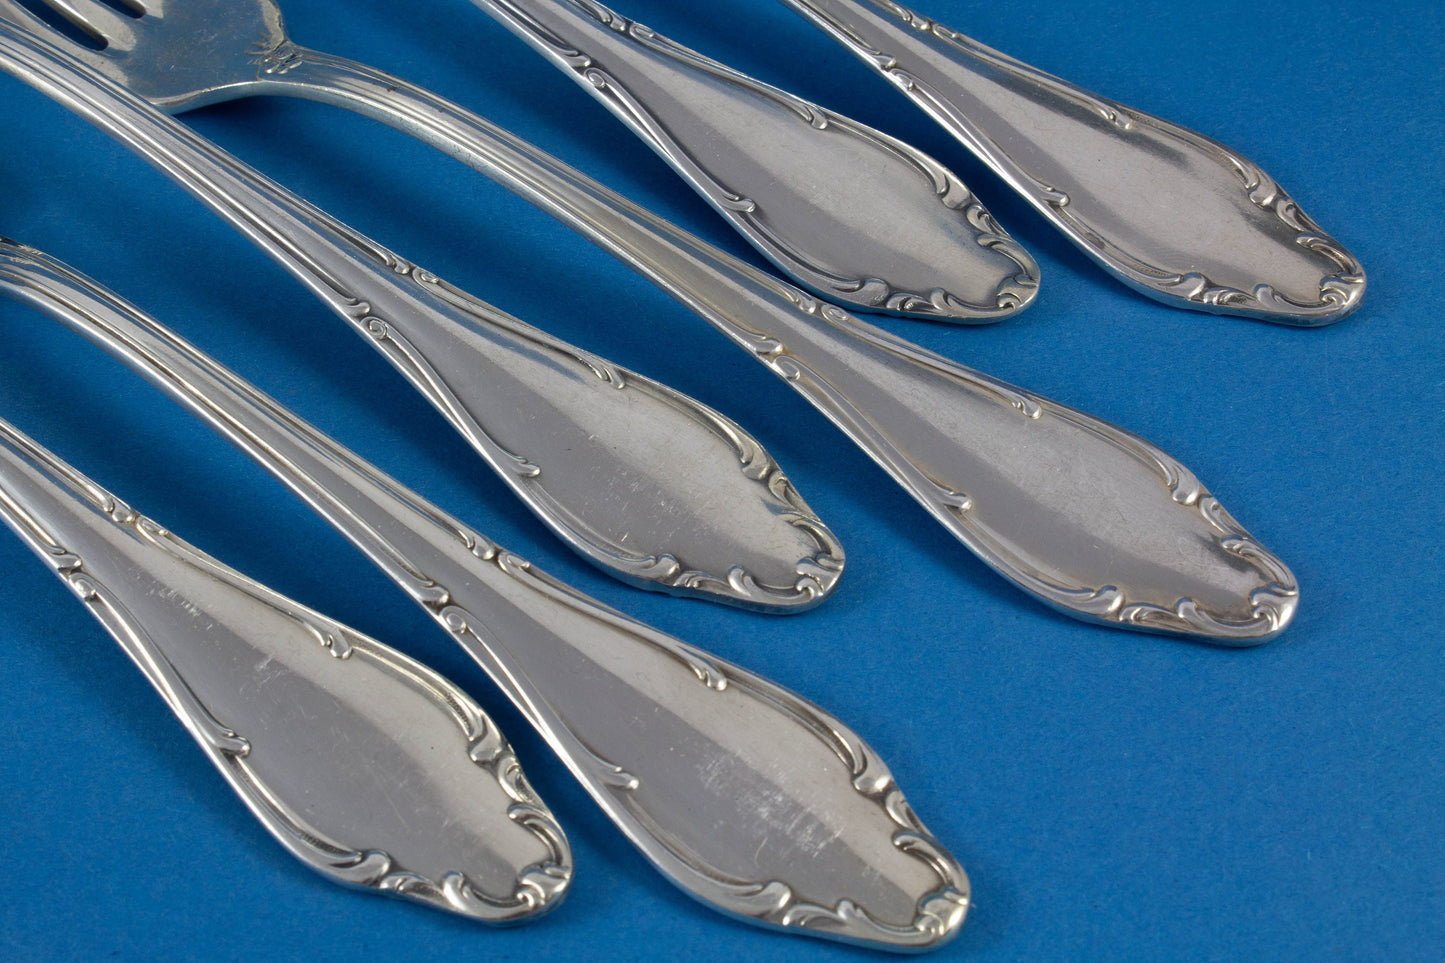 6 table forks from Wellner Mozart, forks